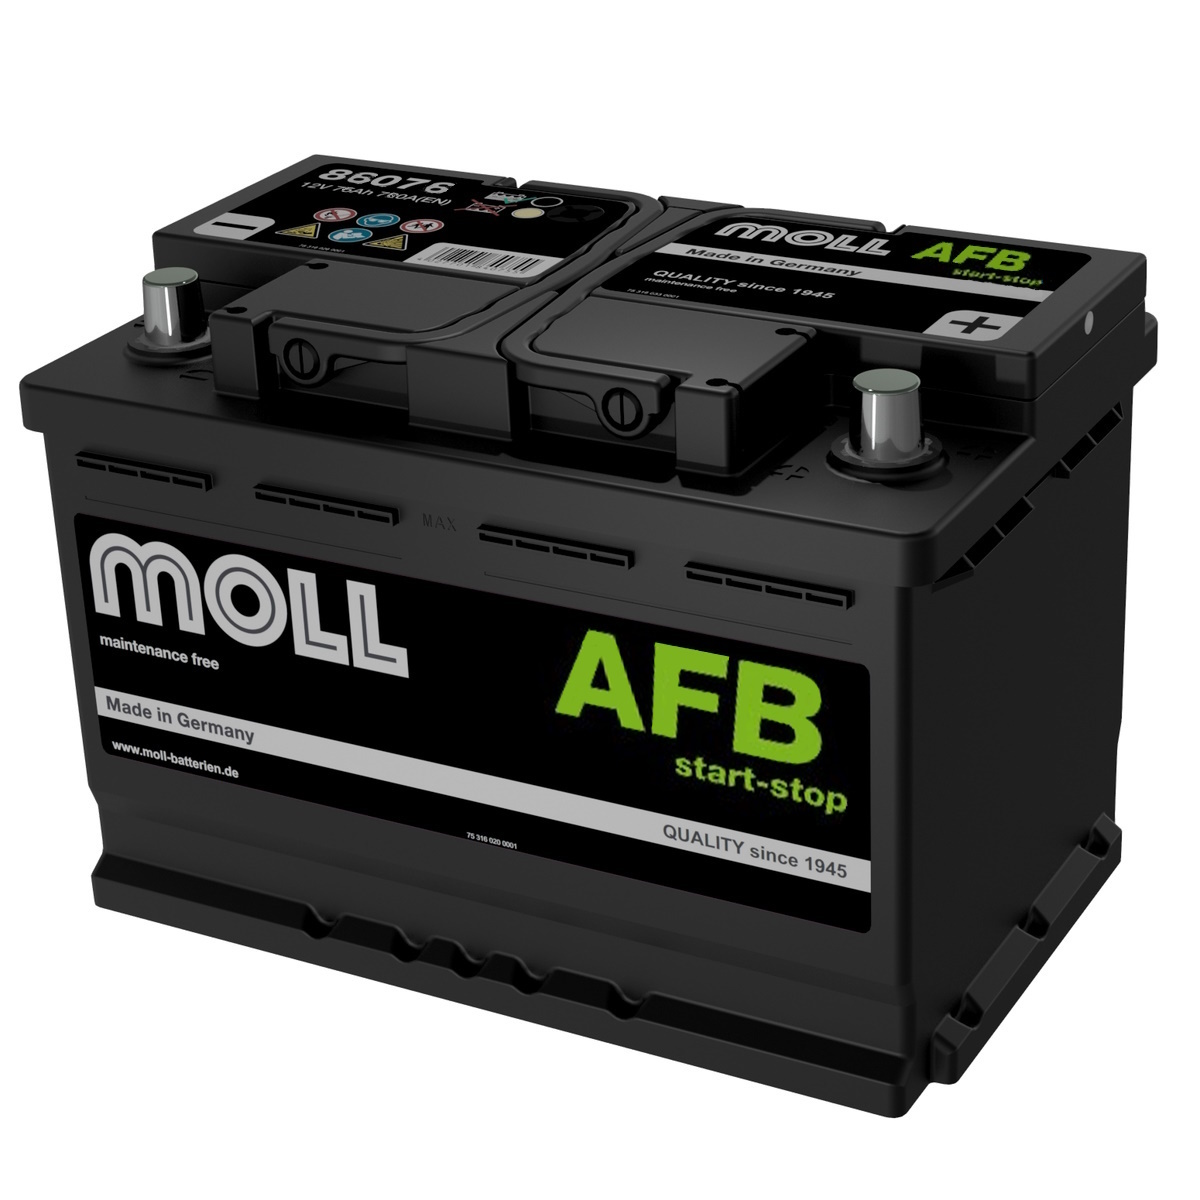 Аккумуляторы MOLL MOLL AFB 106R купить 8 906 062 07 78